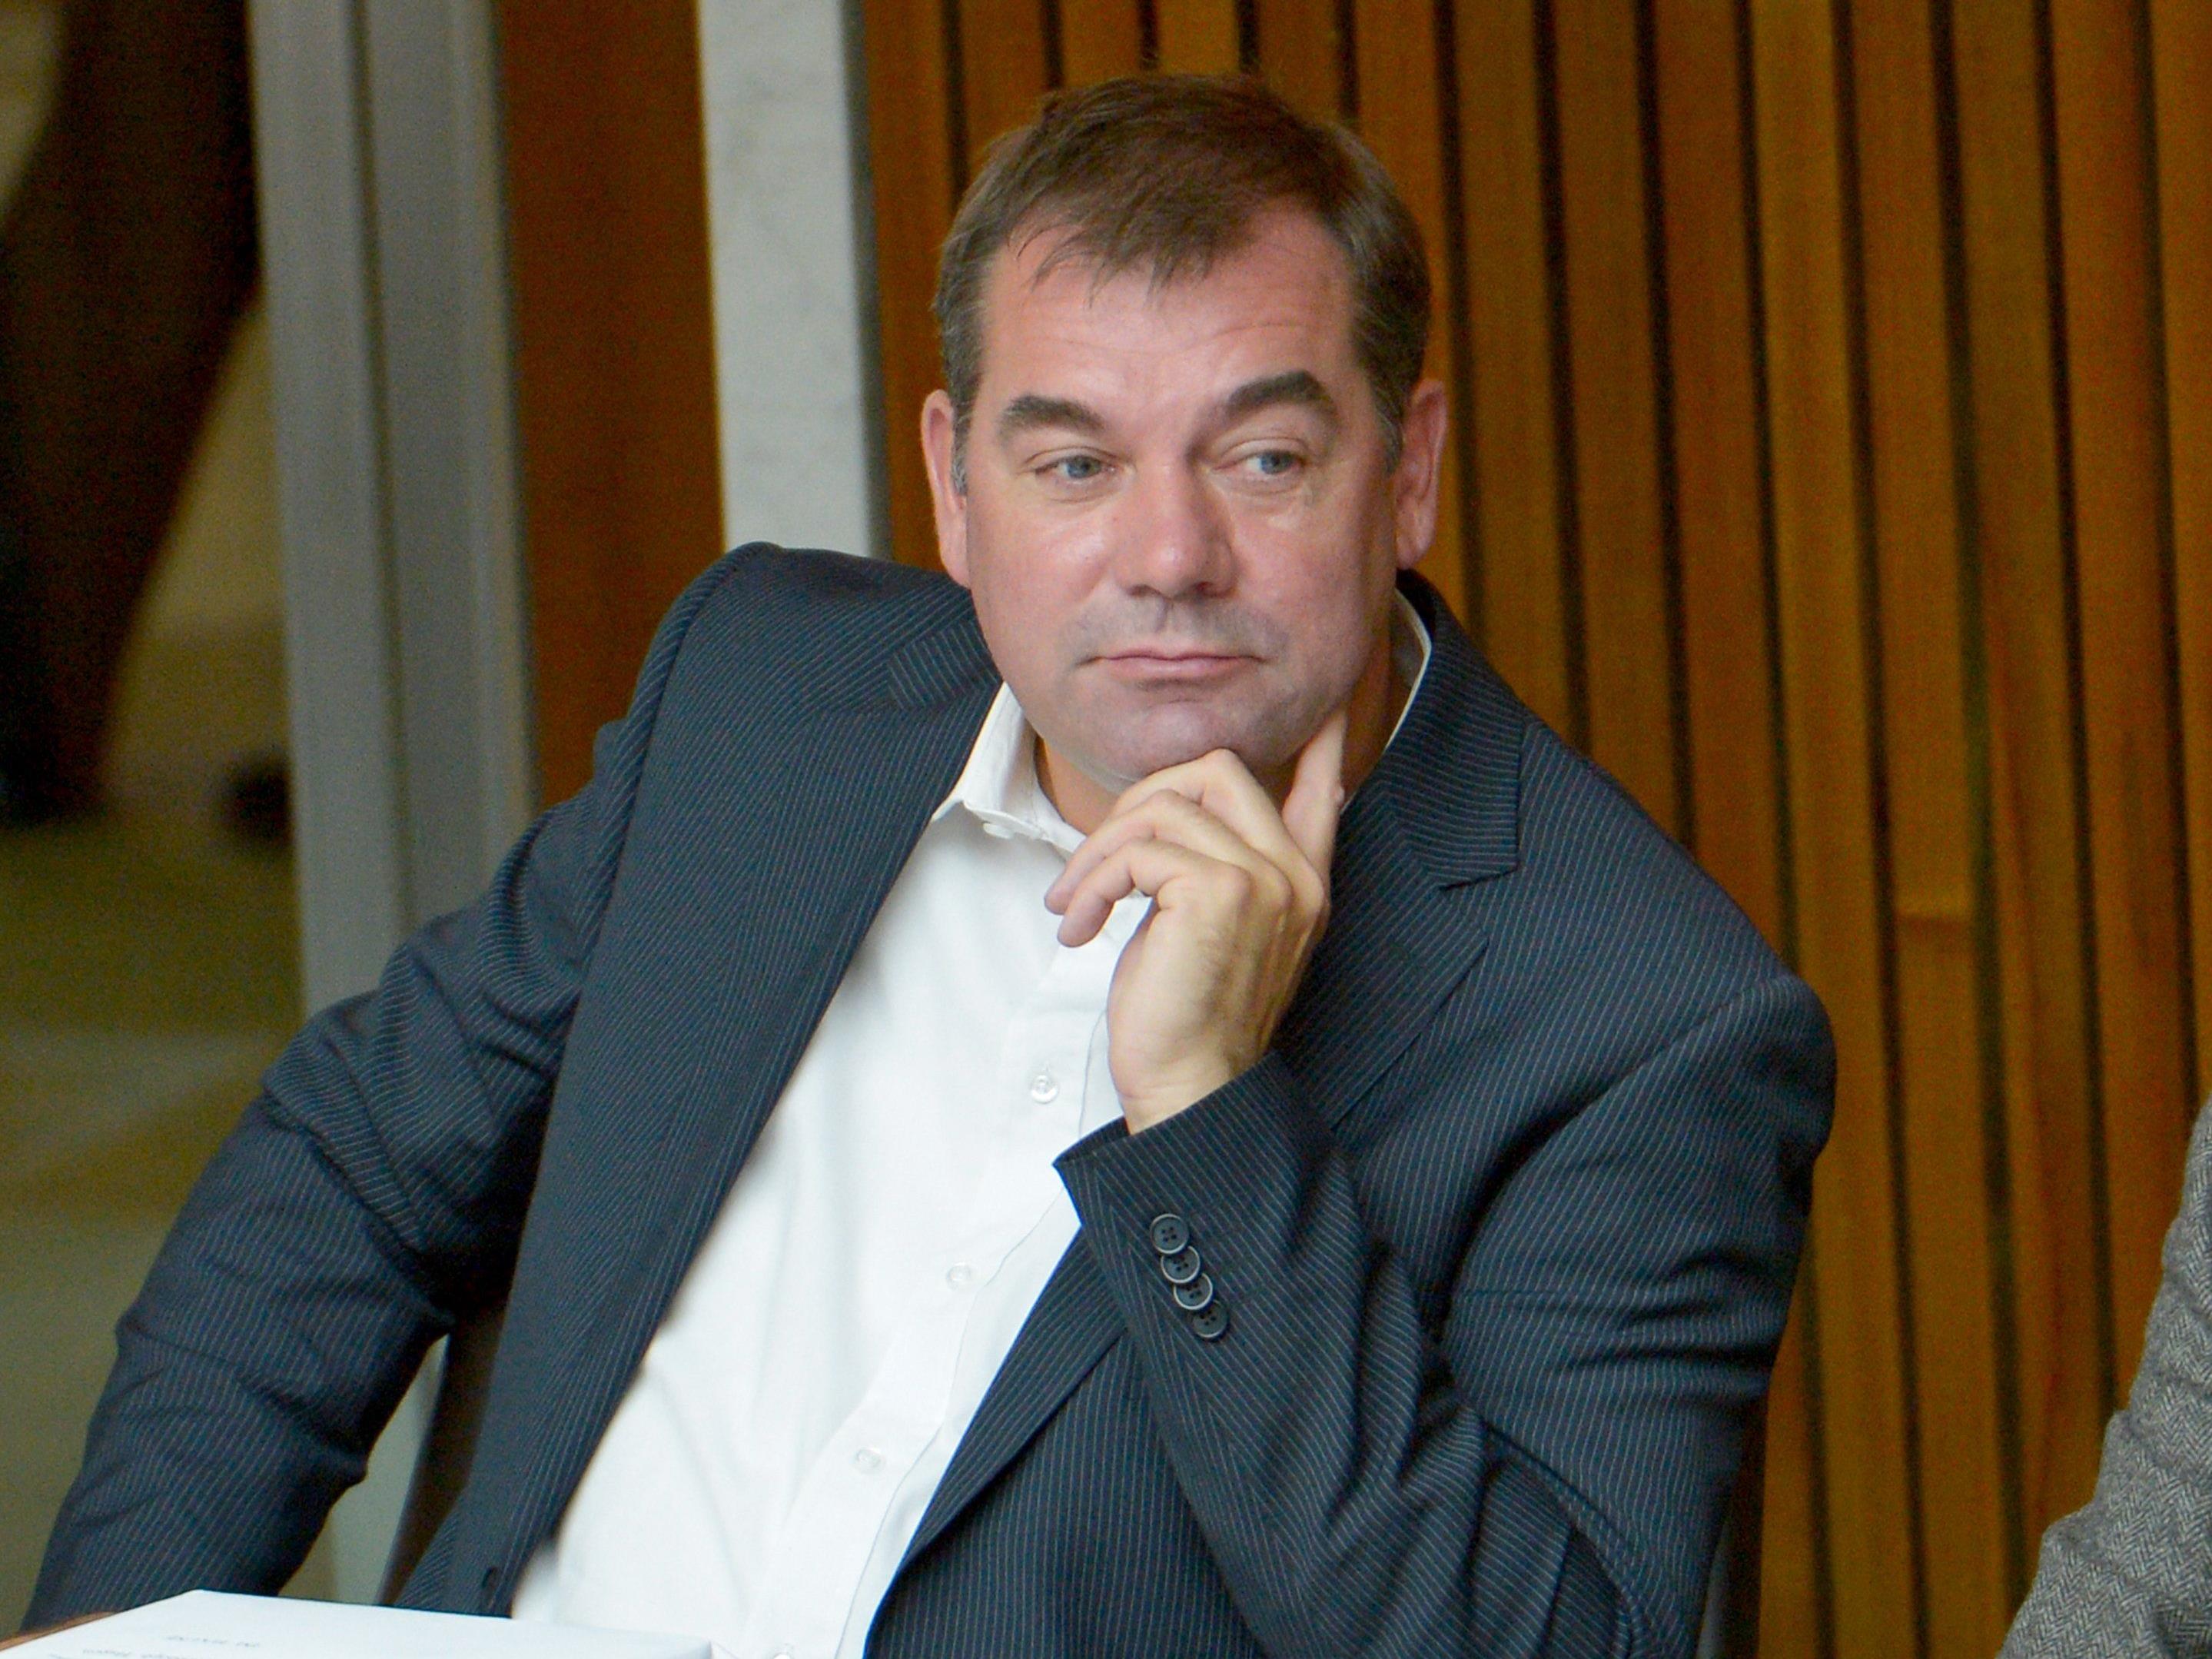 Christoph Hagen sieht sich mit zahlreichen Rücktrittsforderungen konfrontiert.